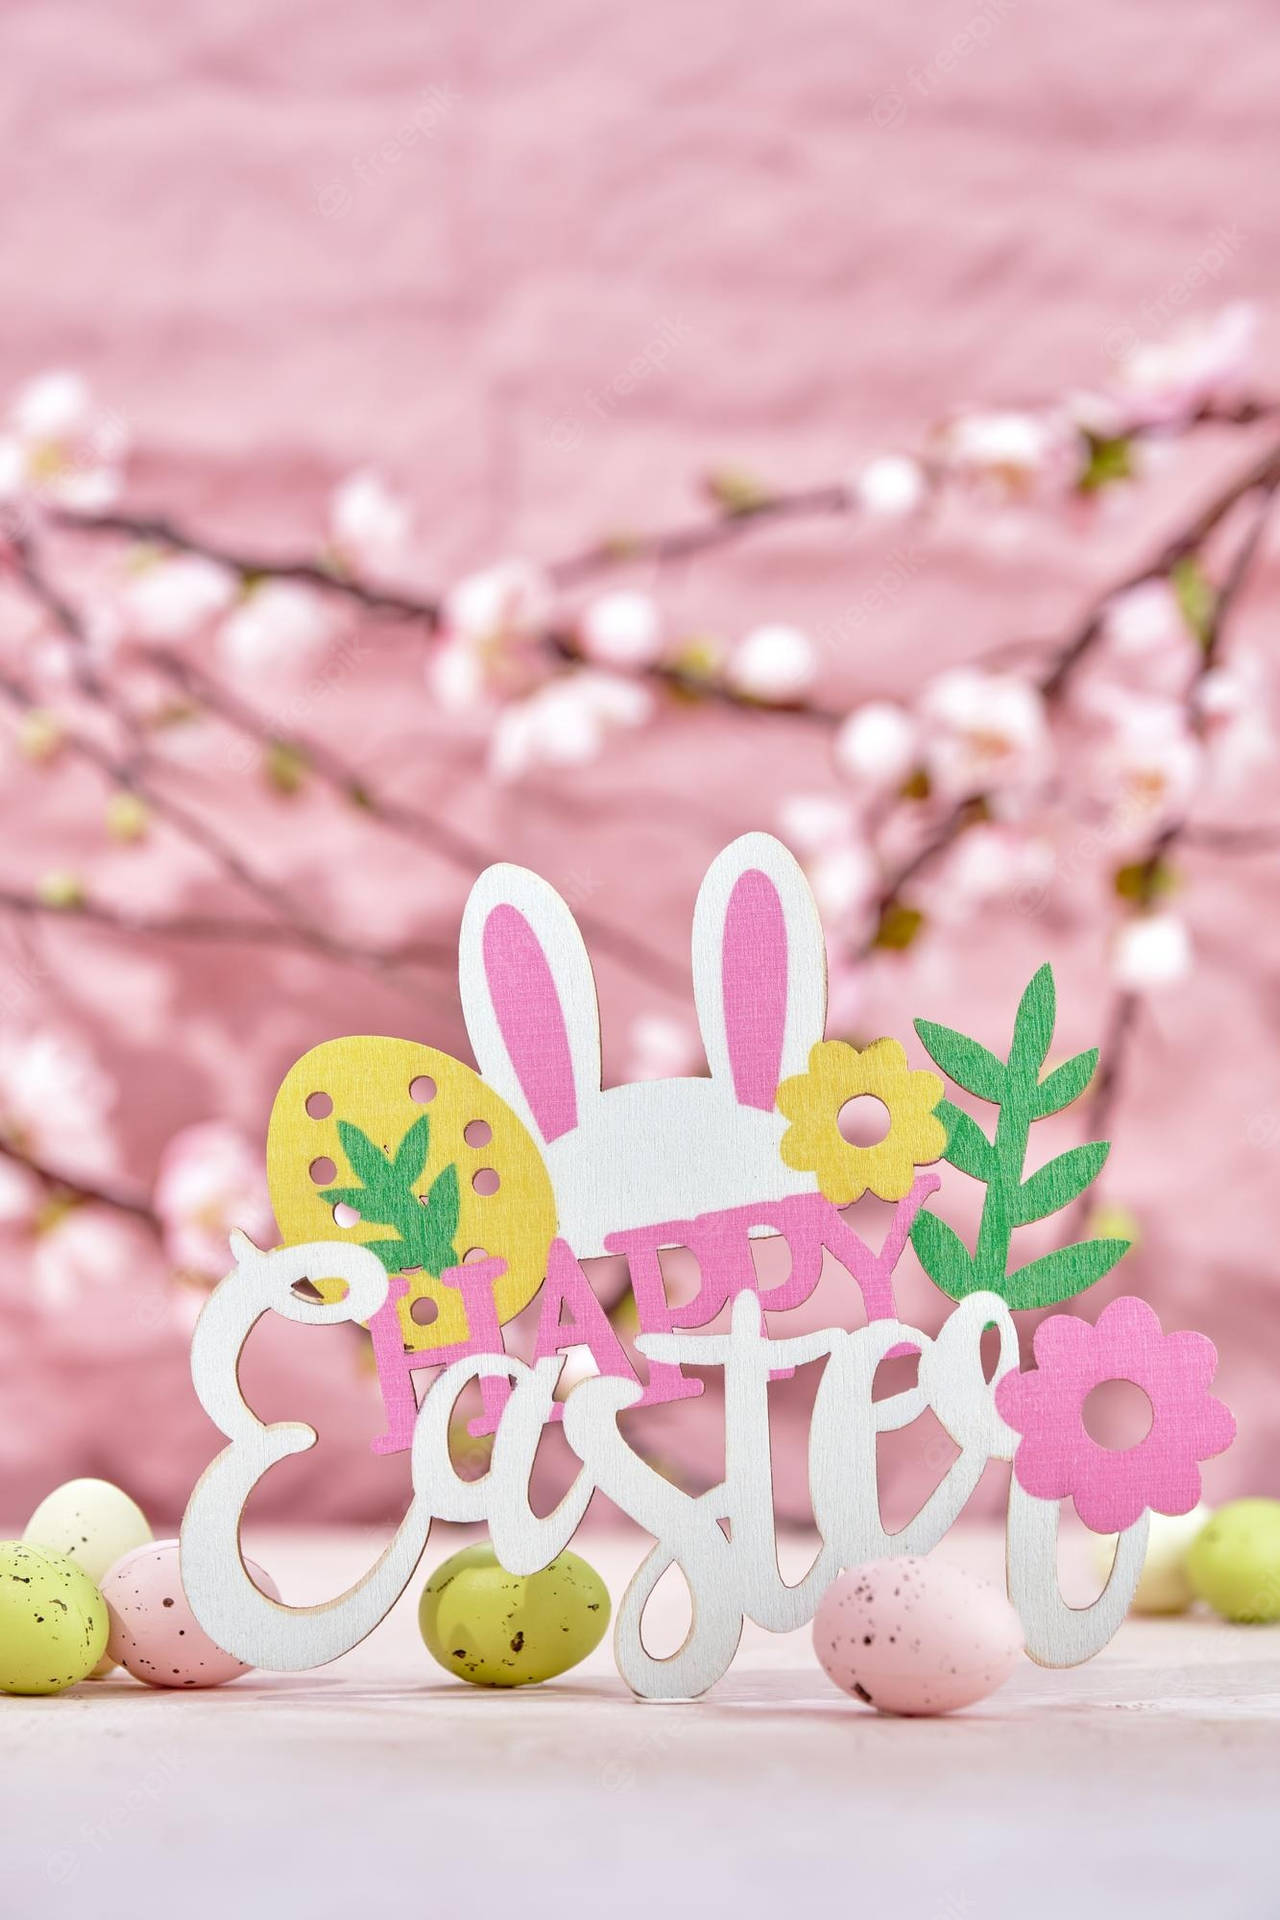 Tết Easter là một trong những dịp lễ trọng đại nhất trong năm và đang đến gần. Hãy chuẩn bị sẵn sàng để tận hưởng những trò chơi và bữa tiệc phong phú của mùa lễ này. Tại đây, bạn sẽ tìm thấy những hình ảnh đặc sắc của Easter, như những quả trứng sơn màu rực rỡ hoặc các loại bánh ngọt ngào đến mê hoặc. Hãy xem hình ảnh để cùng nhau tận hưởng ngày lễ này.